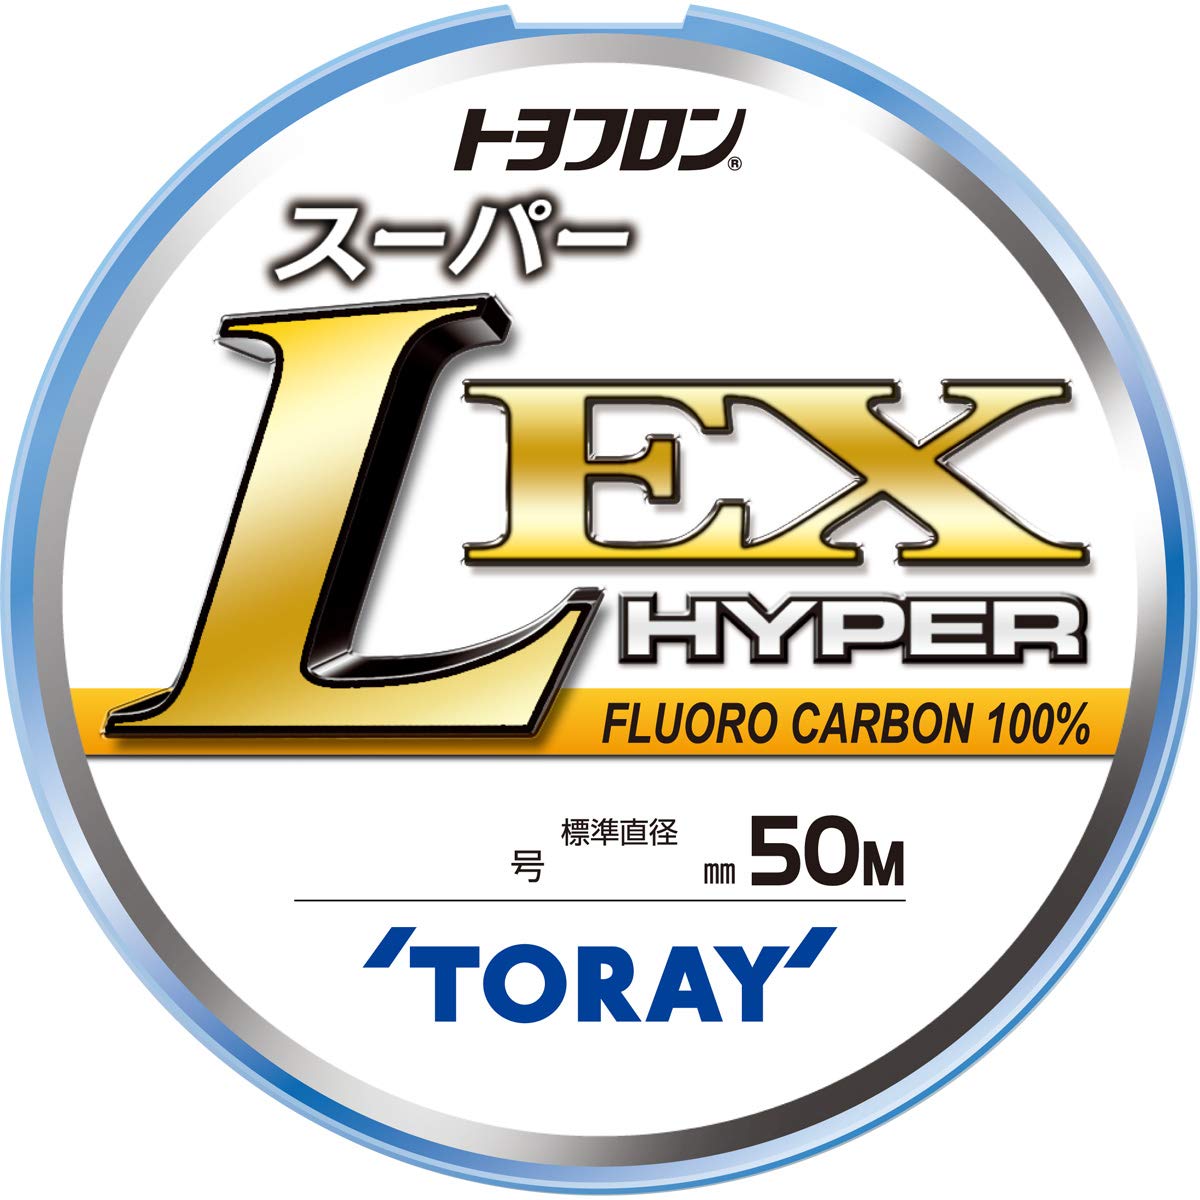 Toray Super L EX Hyper Leader Line 100% FluoroCarbon 50m